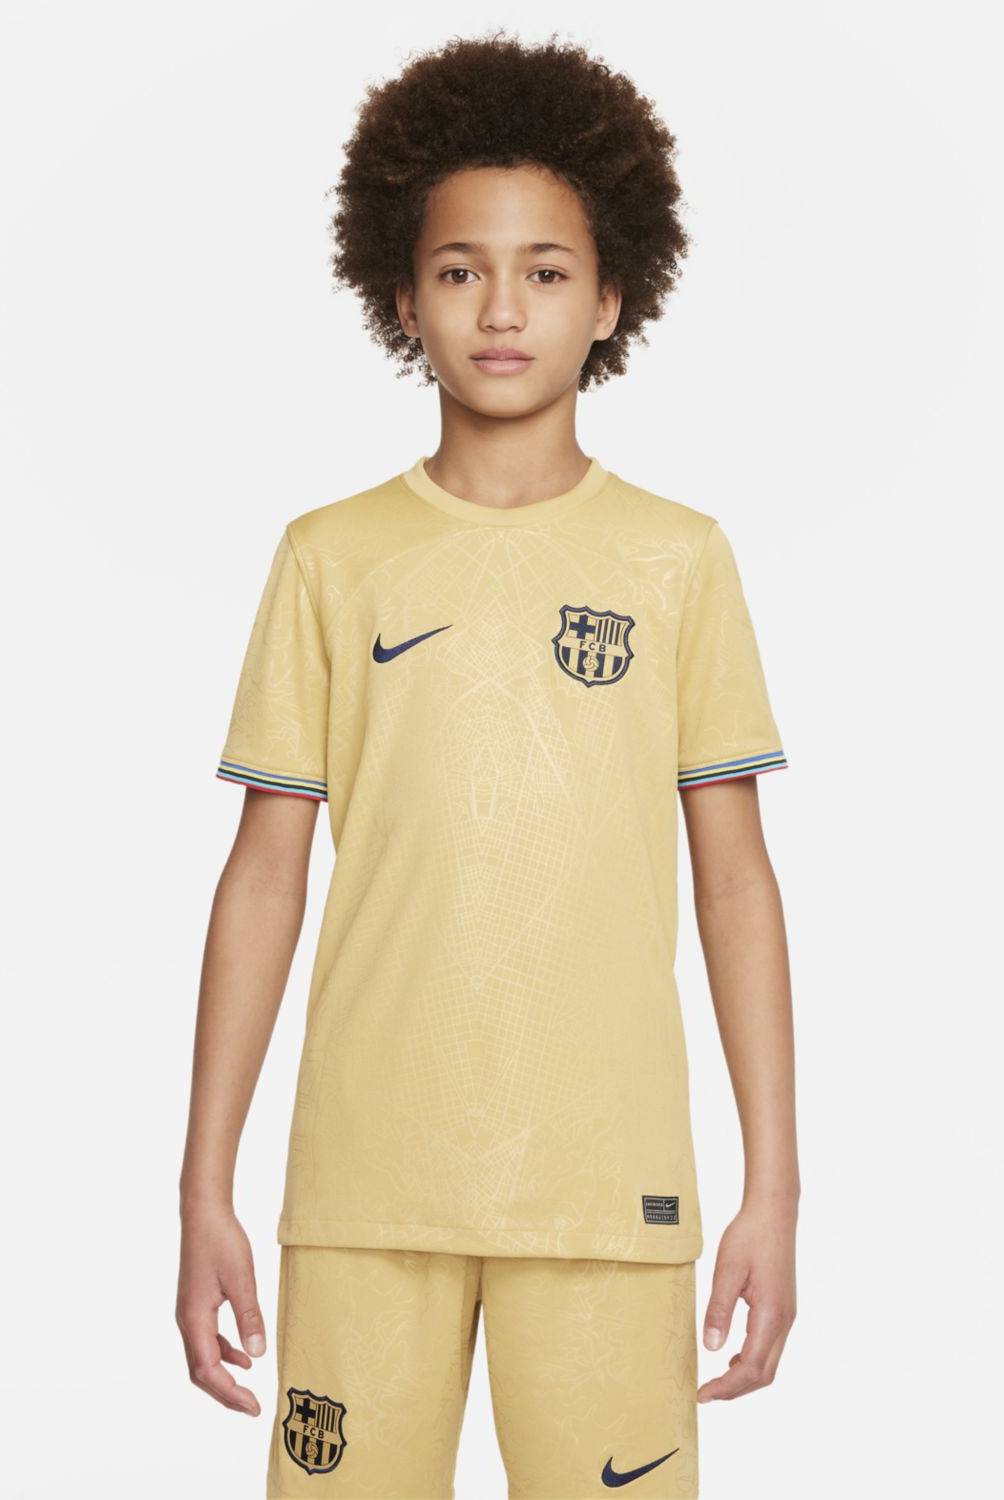 NIKE - Nike Camiseta De Fútbol Fc Barcelona Niño